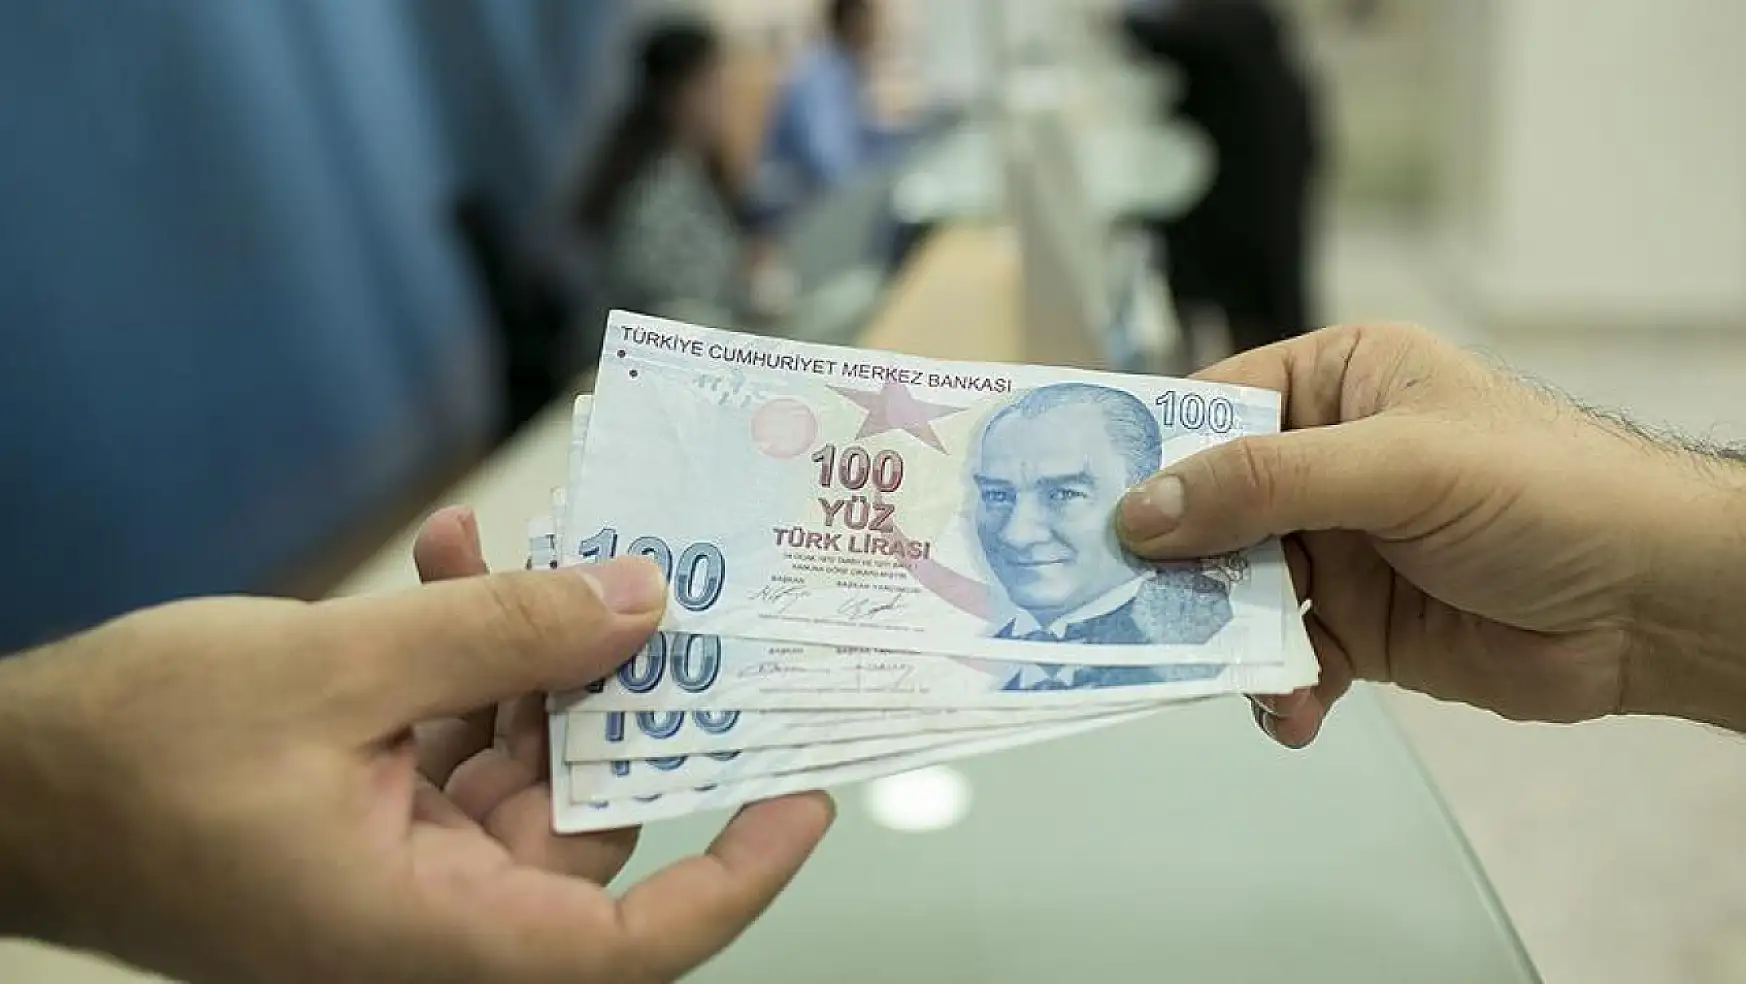 Demirtaş'tan dolar iddiası: 'Bunların olması ülkelerin batmasına eşdeğerdir'